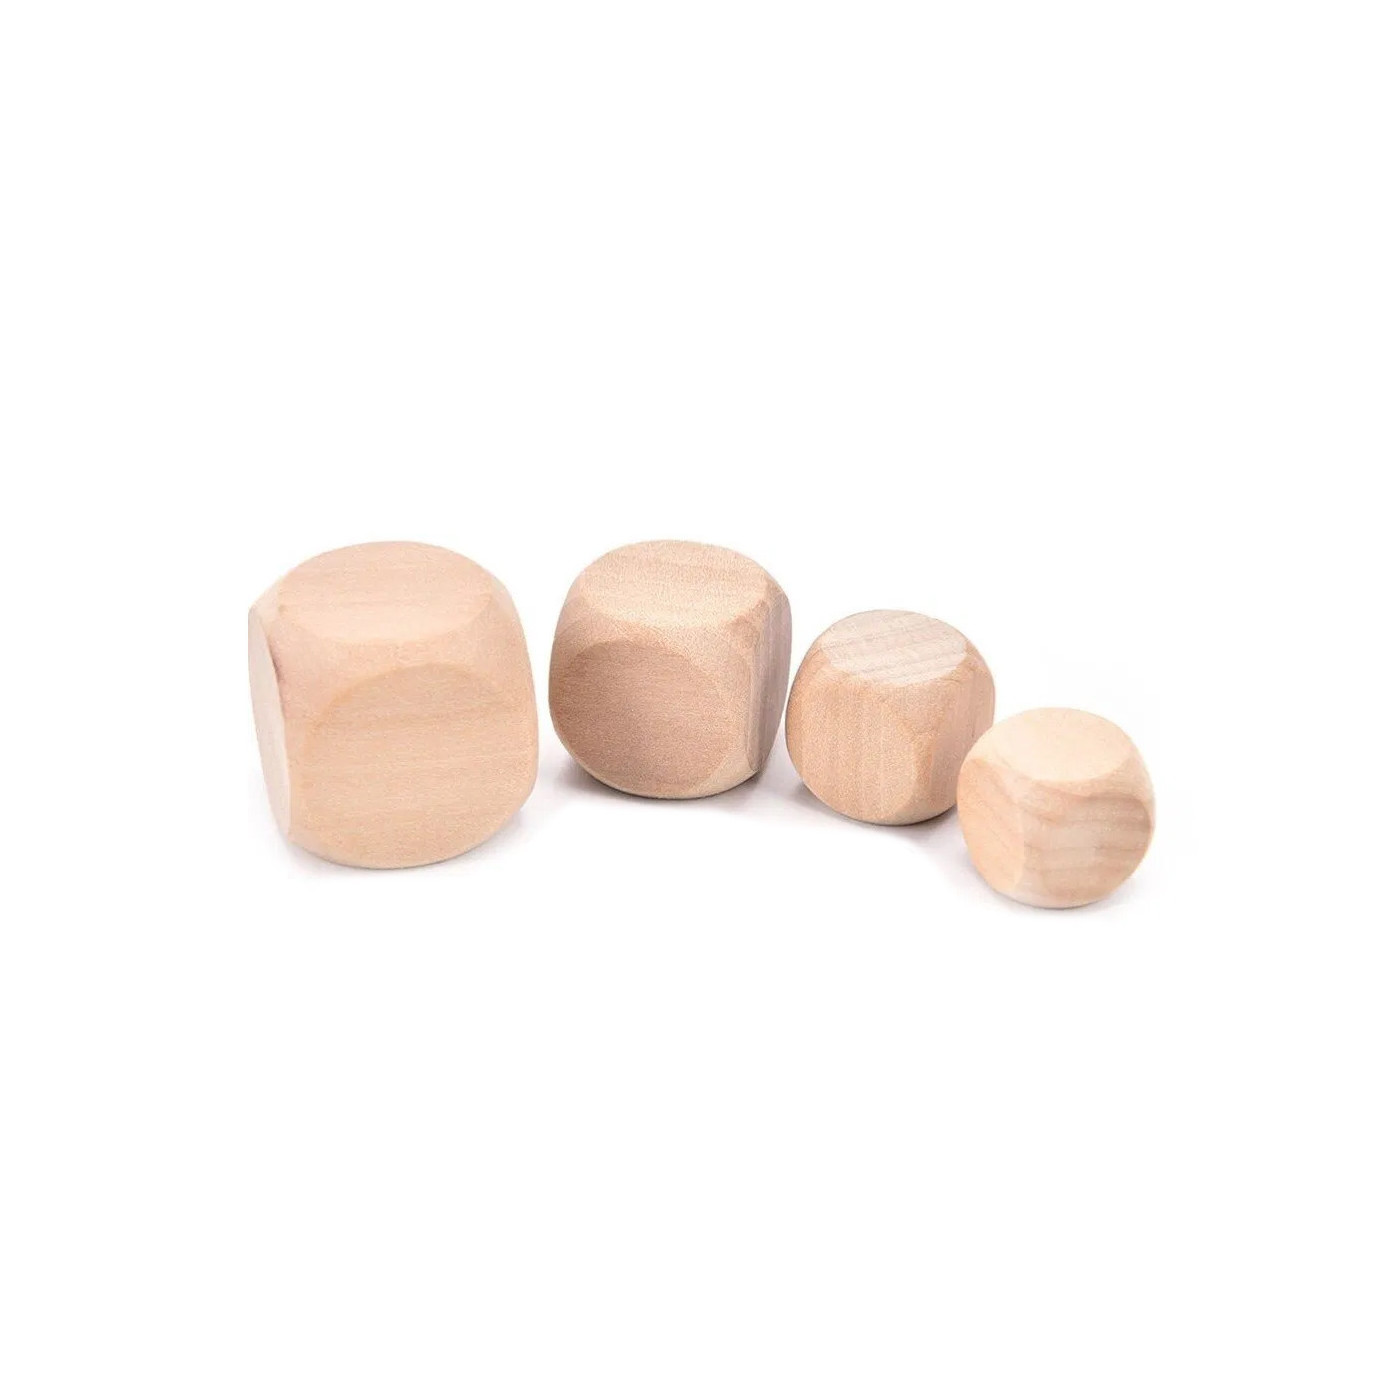 Conjunto de 100 cubos de madera (dados), tamaño: pequeño (8 mm)